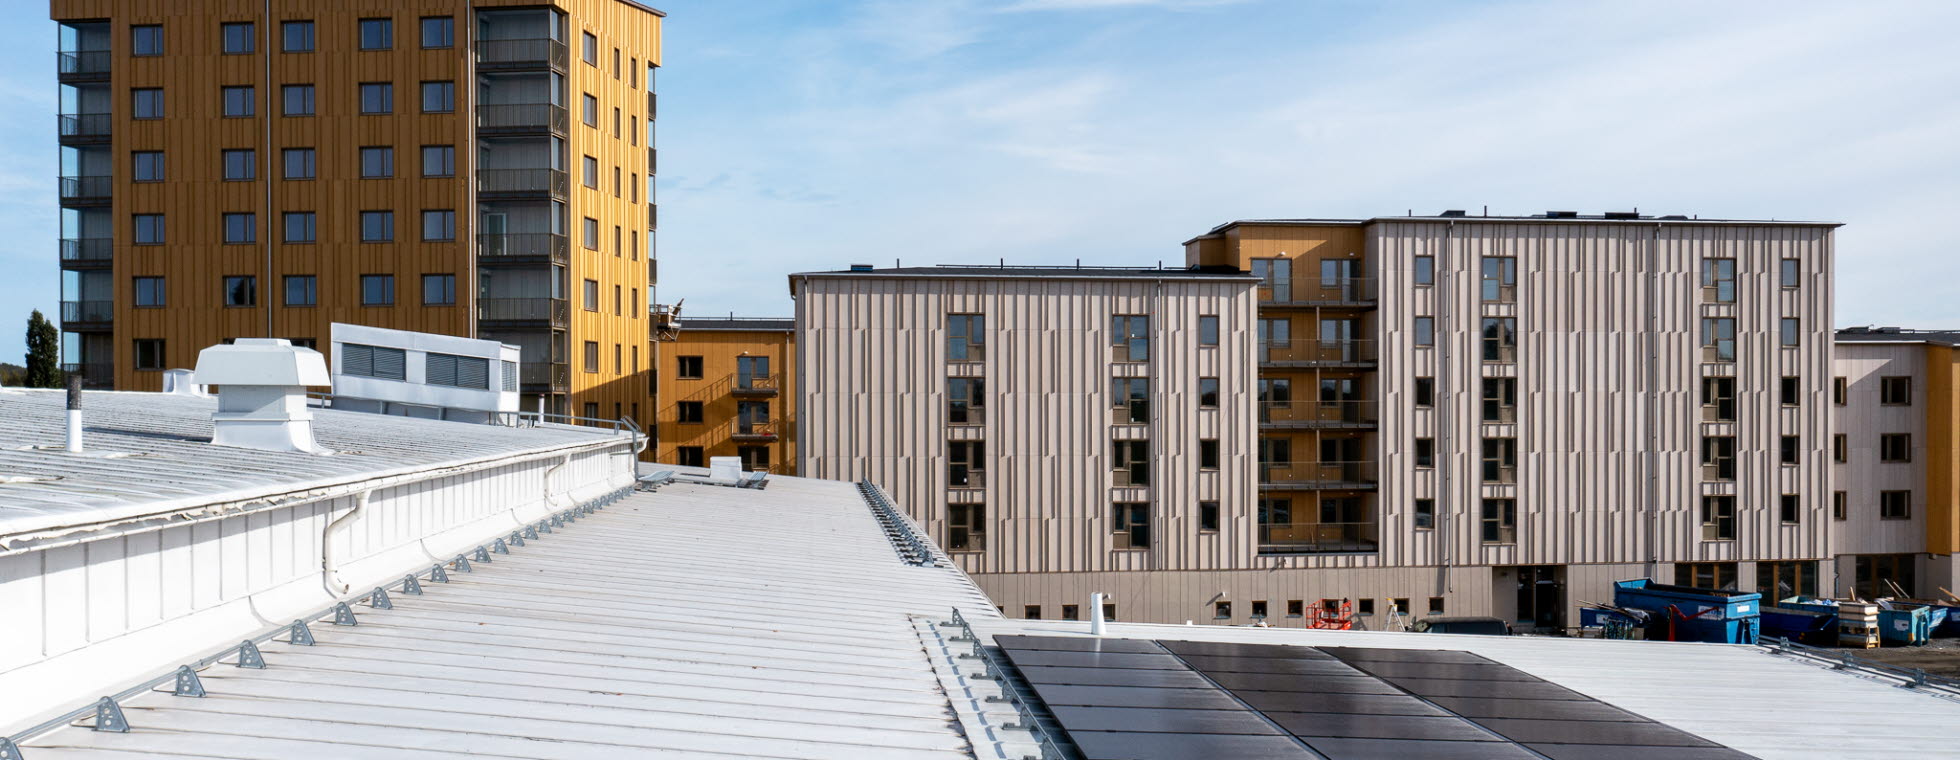 Solceller på tak i centrala Skellefteå